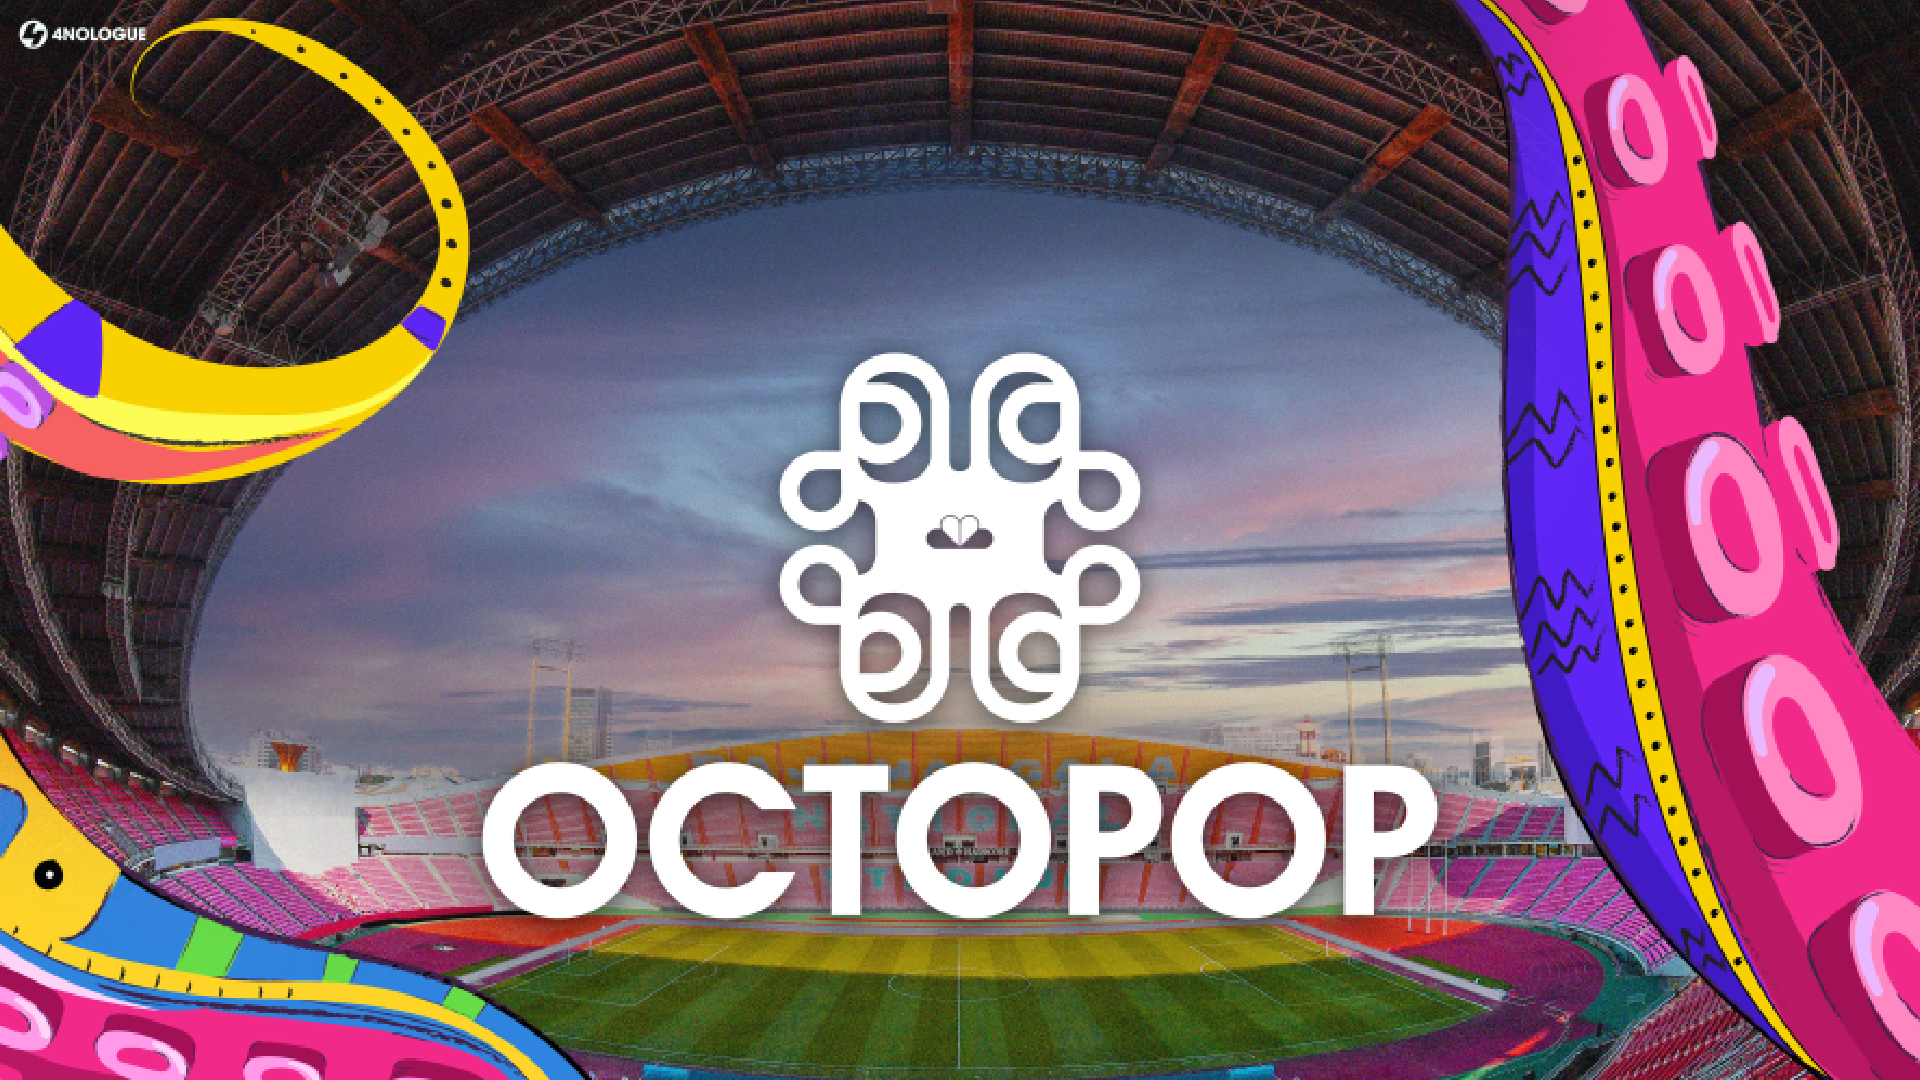 ประกาศๆ !! “OCTOPOP” เทศกาลดนตรีที่มีแต่ความ POP!! นัดรวมพลใหญ่ เตรียมยึด “ราชมังฯ” 15-16 ตุลาคมนี้!